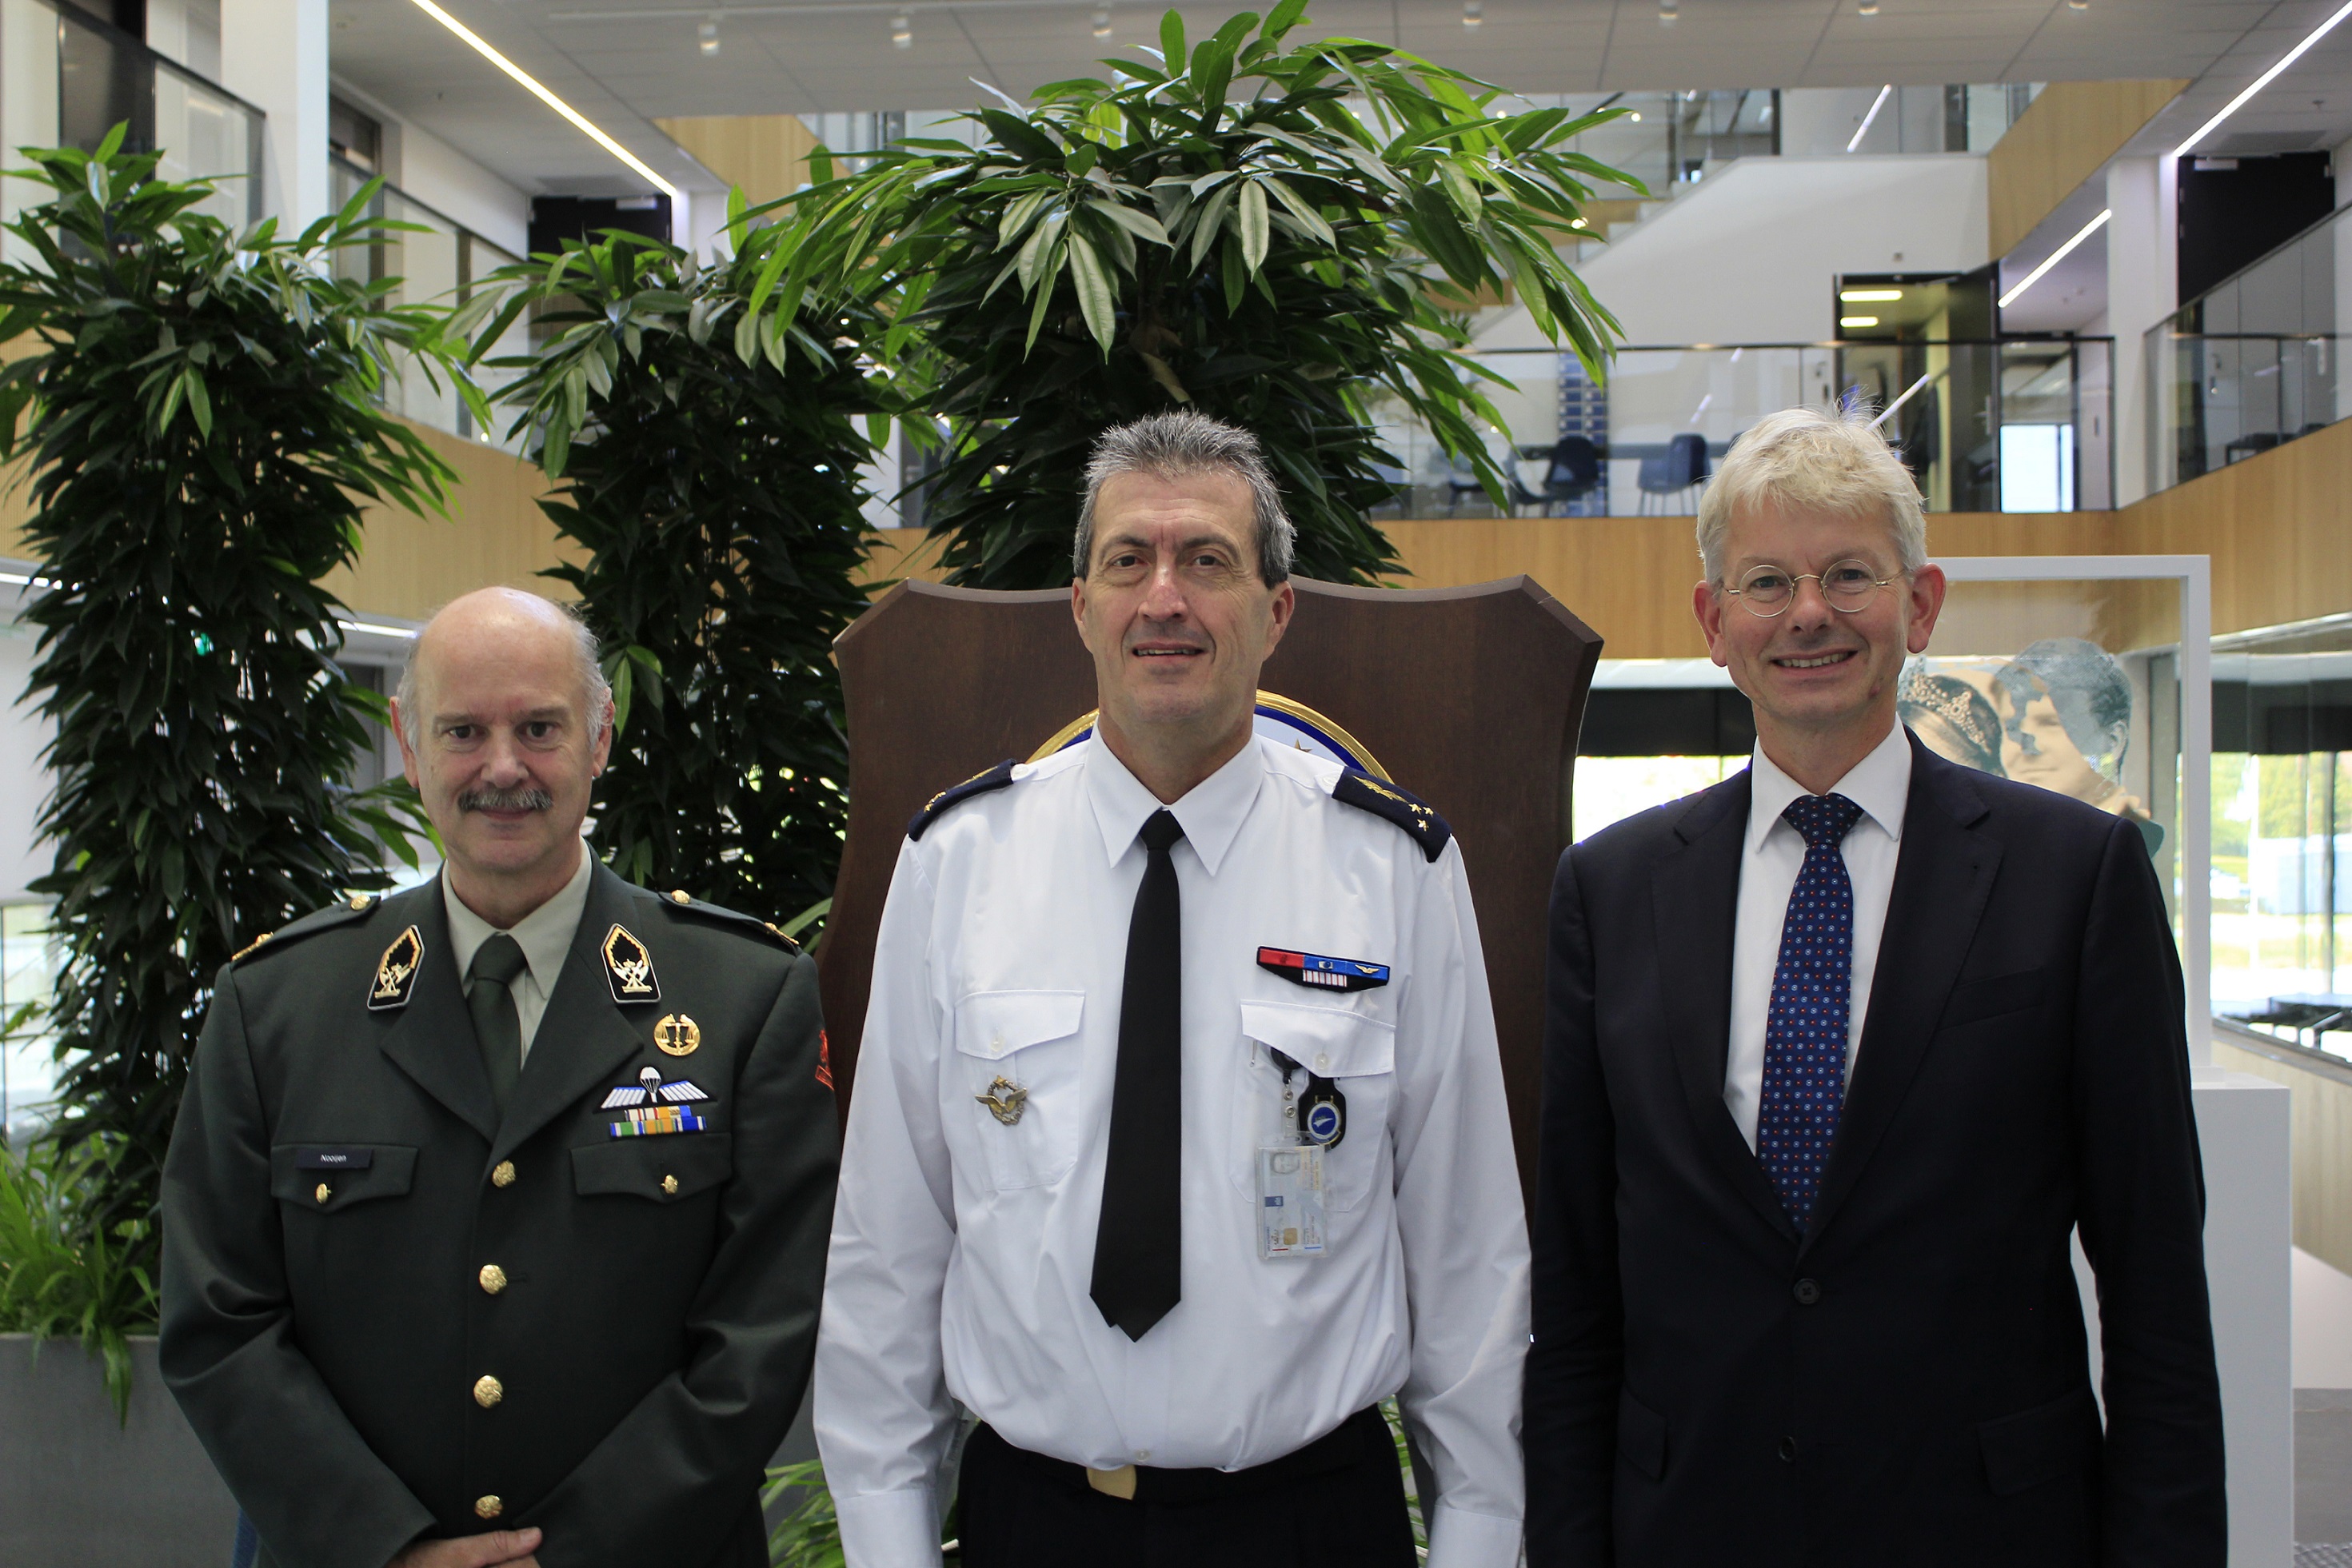 Mr Versluijs and Brigadier General Nooijen meet the Commander EATC